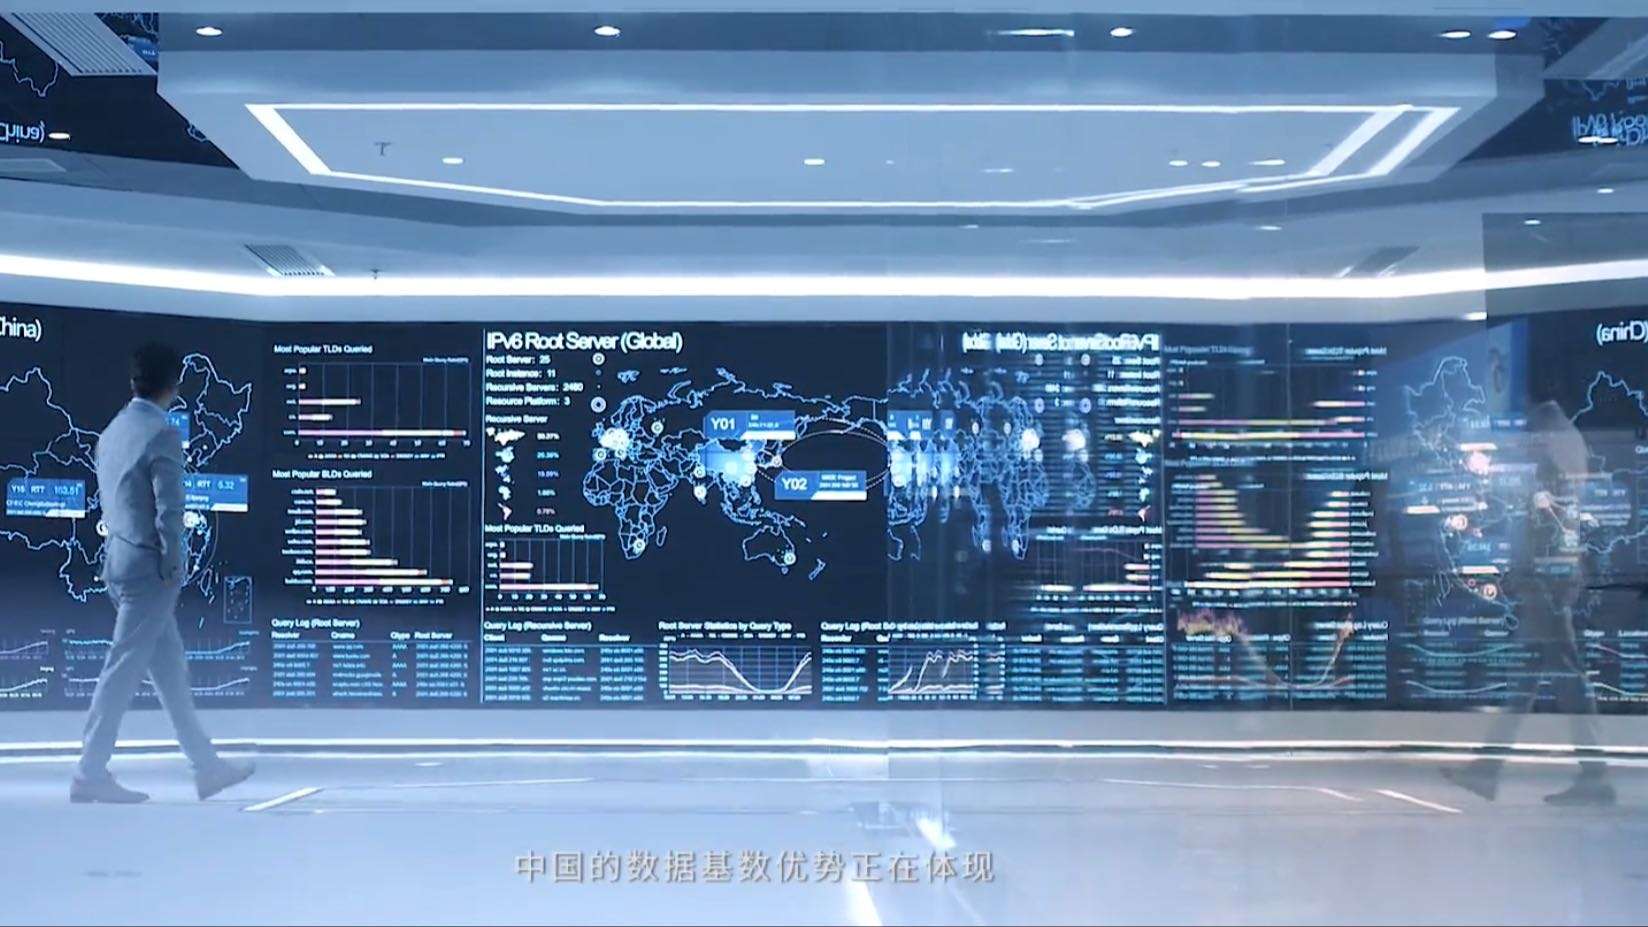 南京江北新区研创园创业宣传片《让梦想照进现实》